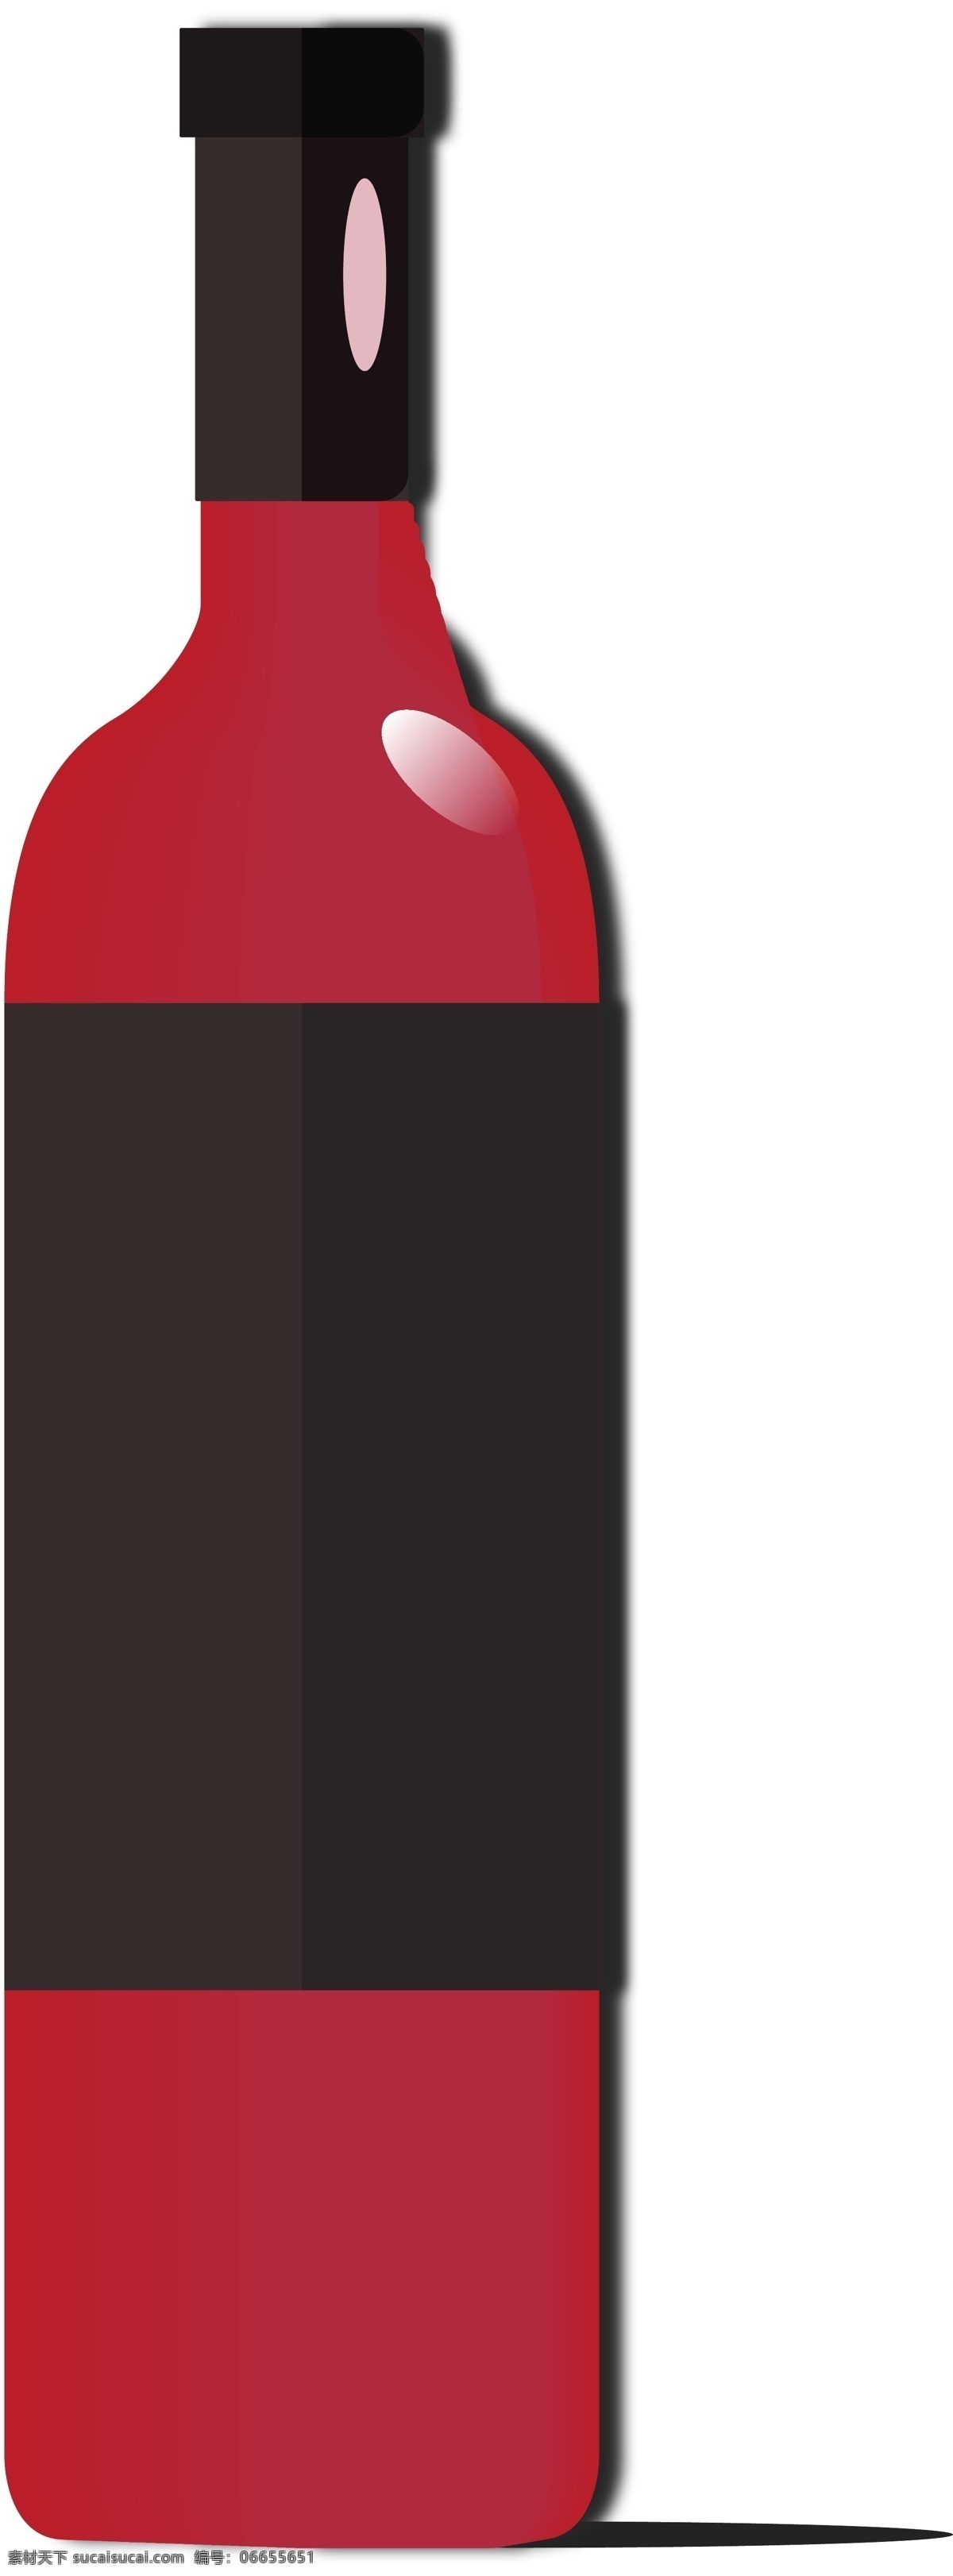 高款红酒瓶 高档 包装 红酒瓶 样式